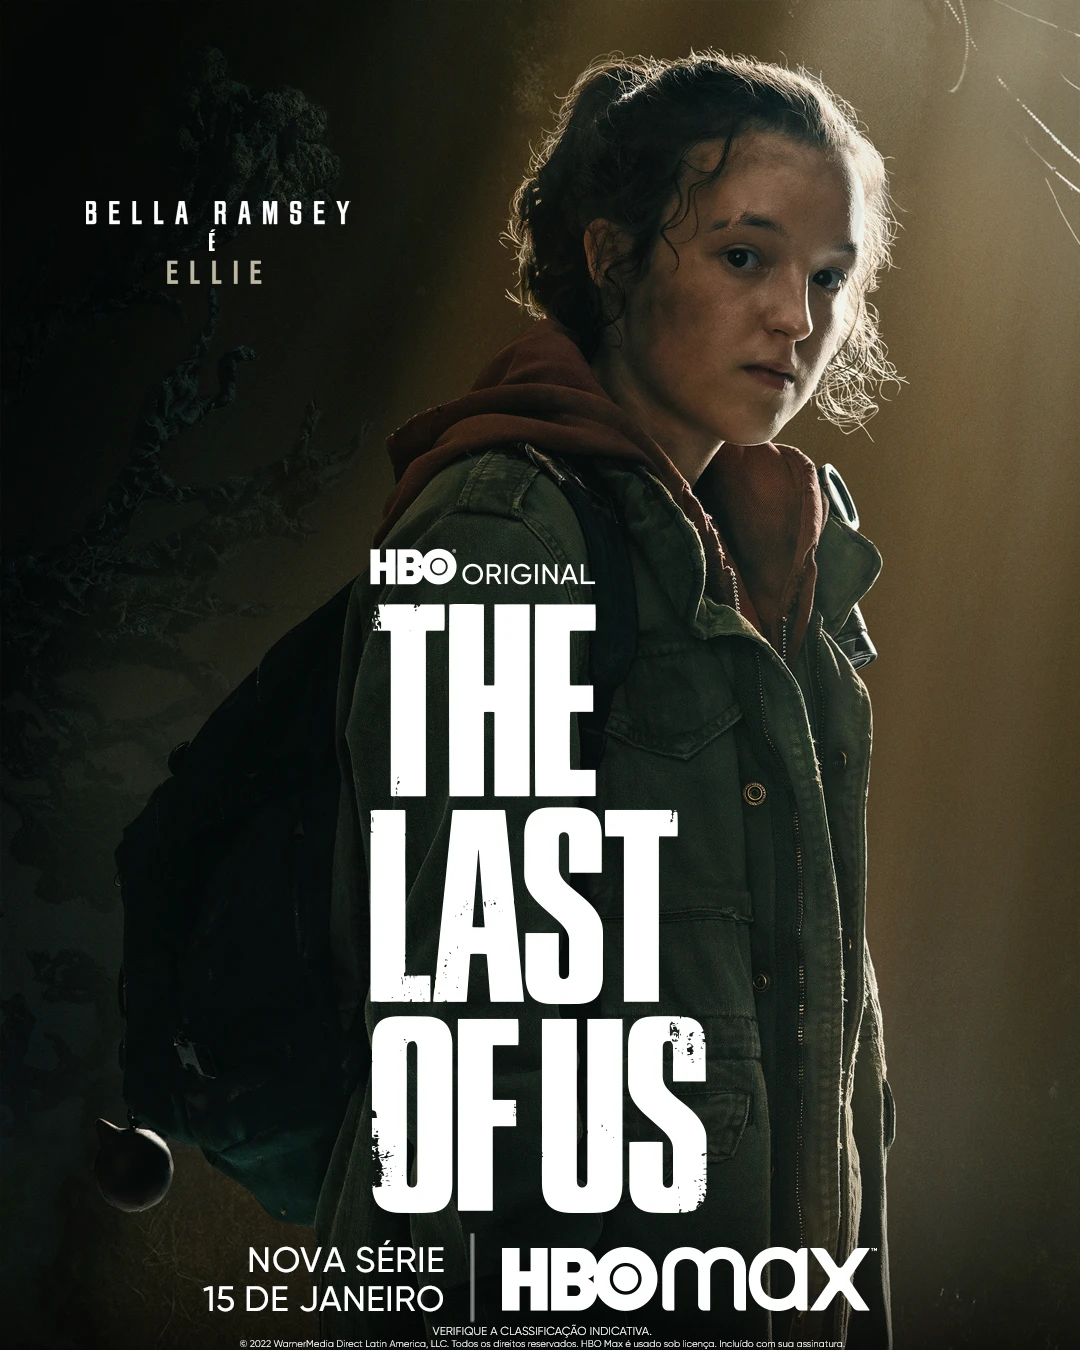 The Last of Us fez atriz do game e da série chorar